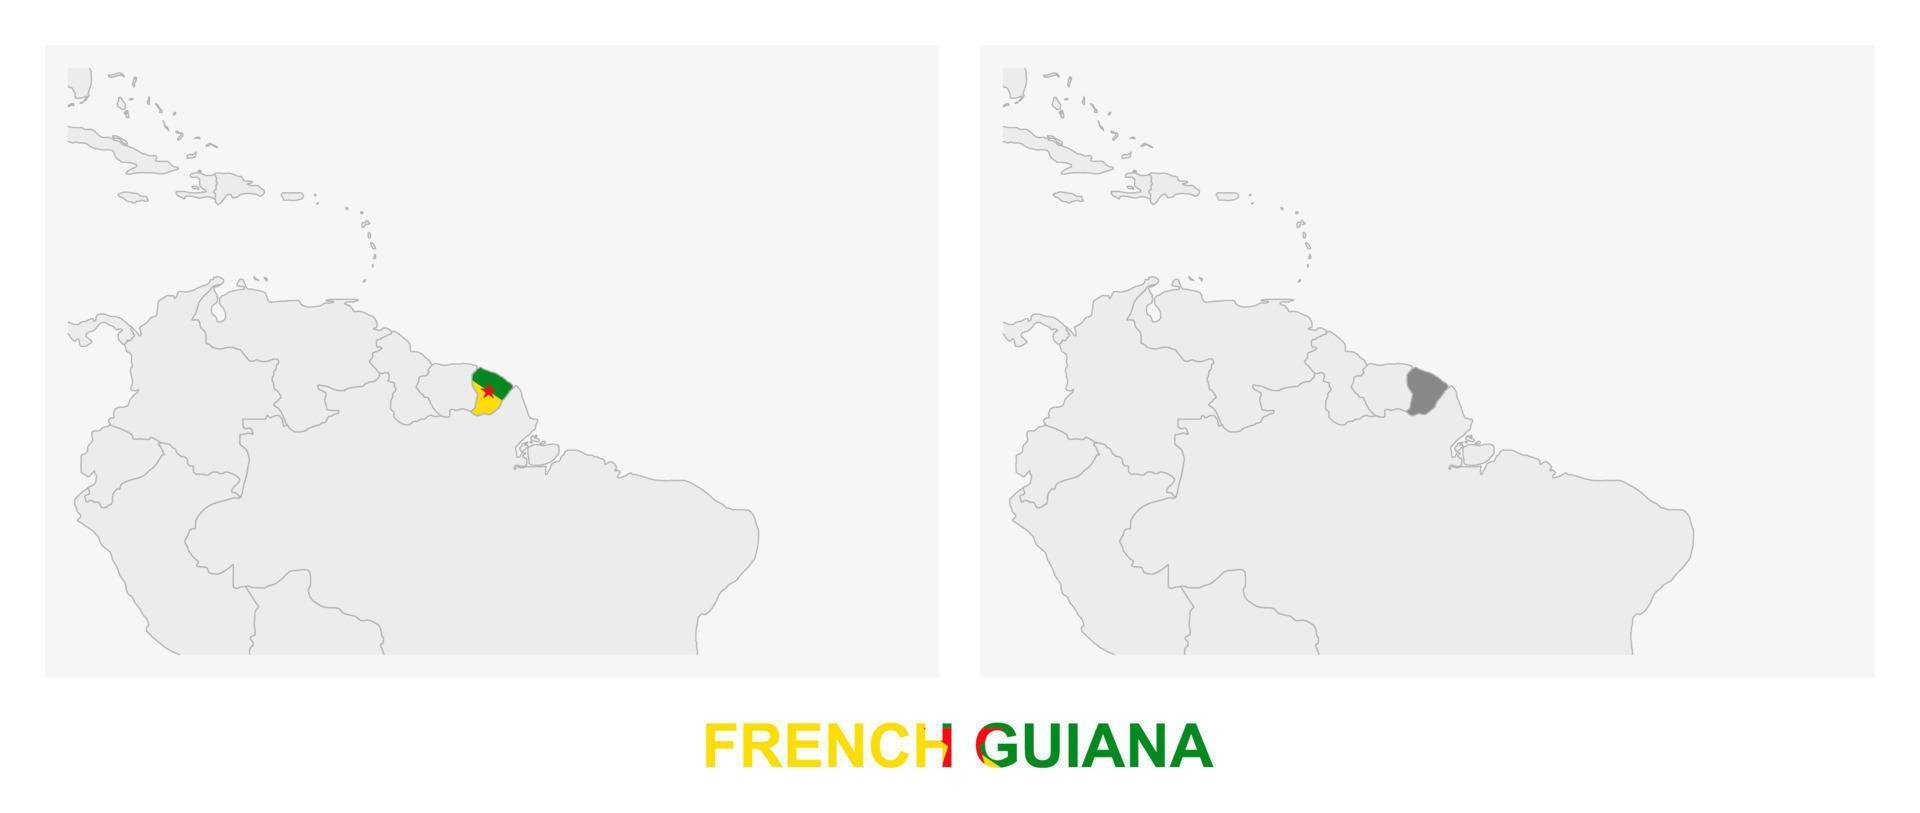 zwei versionen der karte von französisch-guayana, mit der flagge von französisch-guayana und dunkelgrau hervorgehoben. vektor